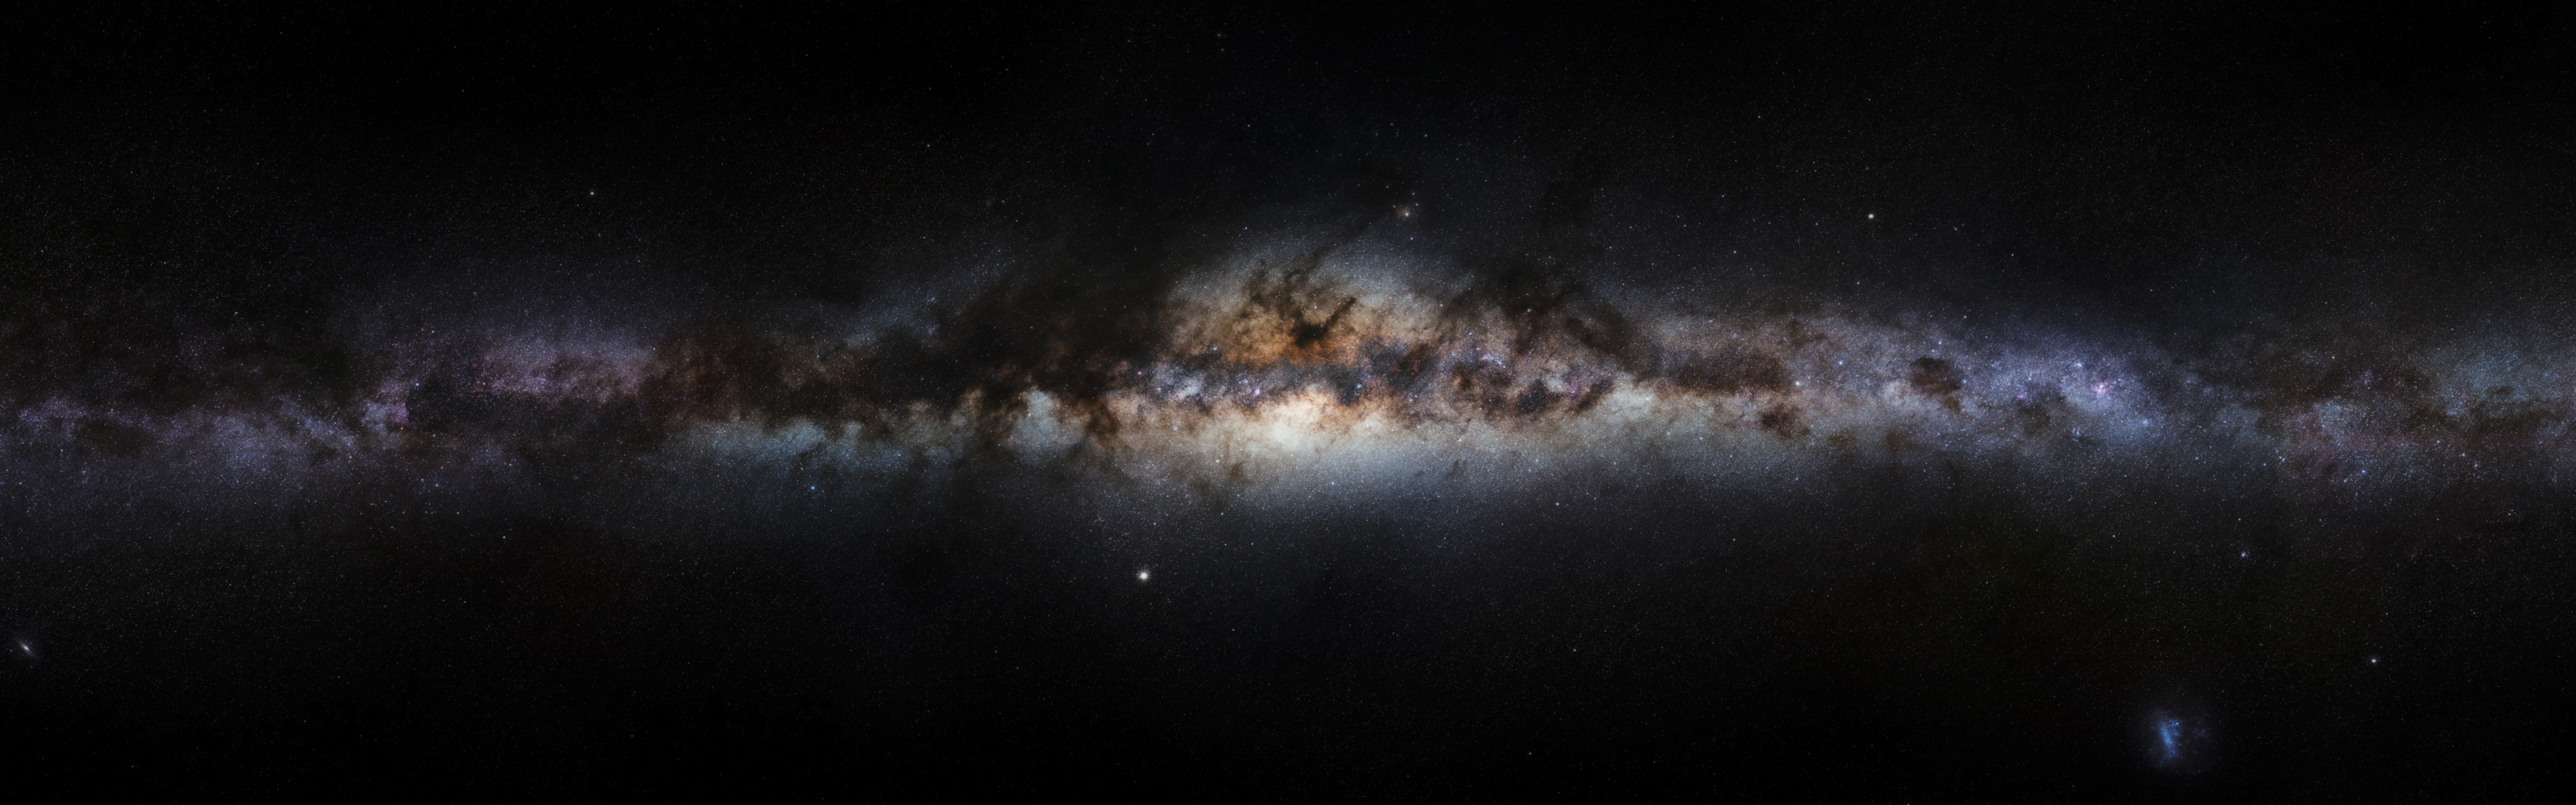 Galaxy Milky Way Stars 3840x1200